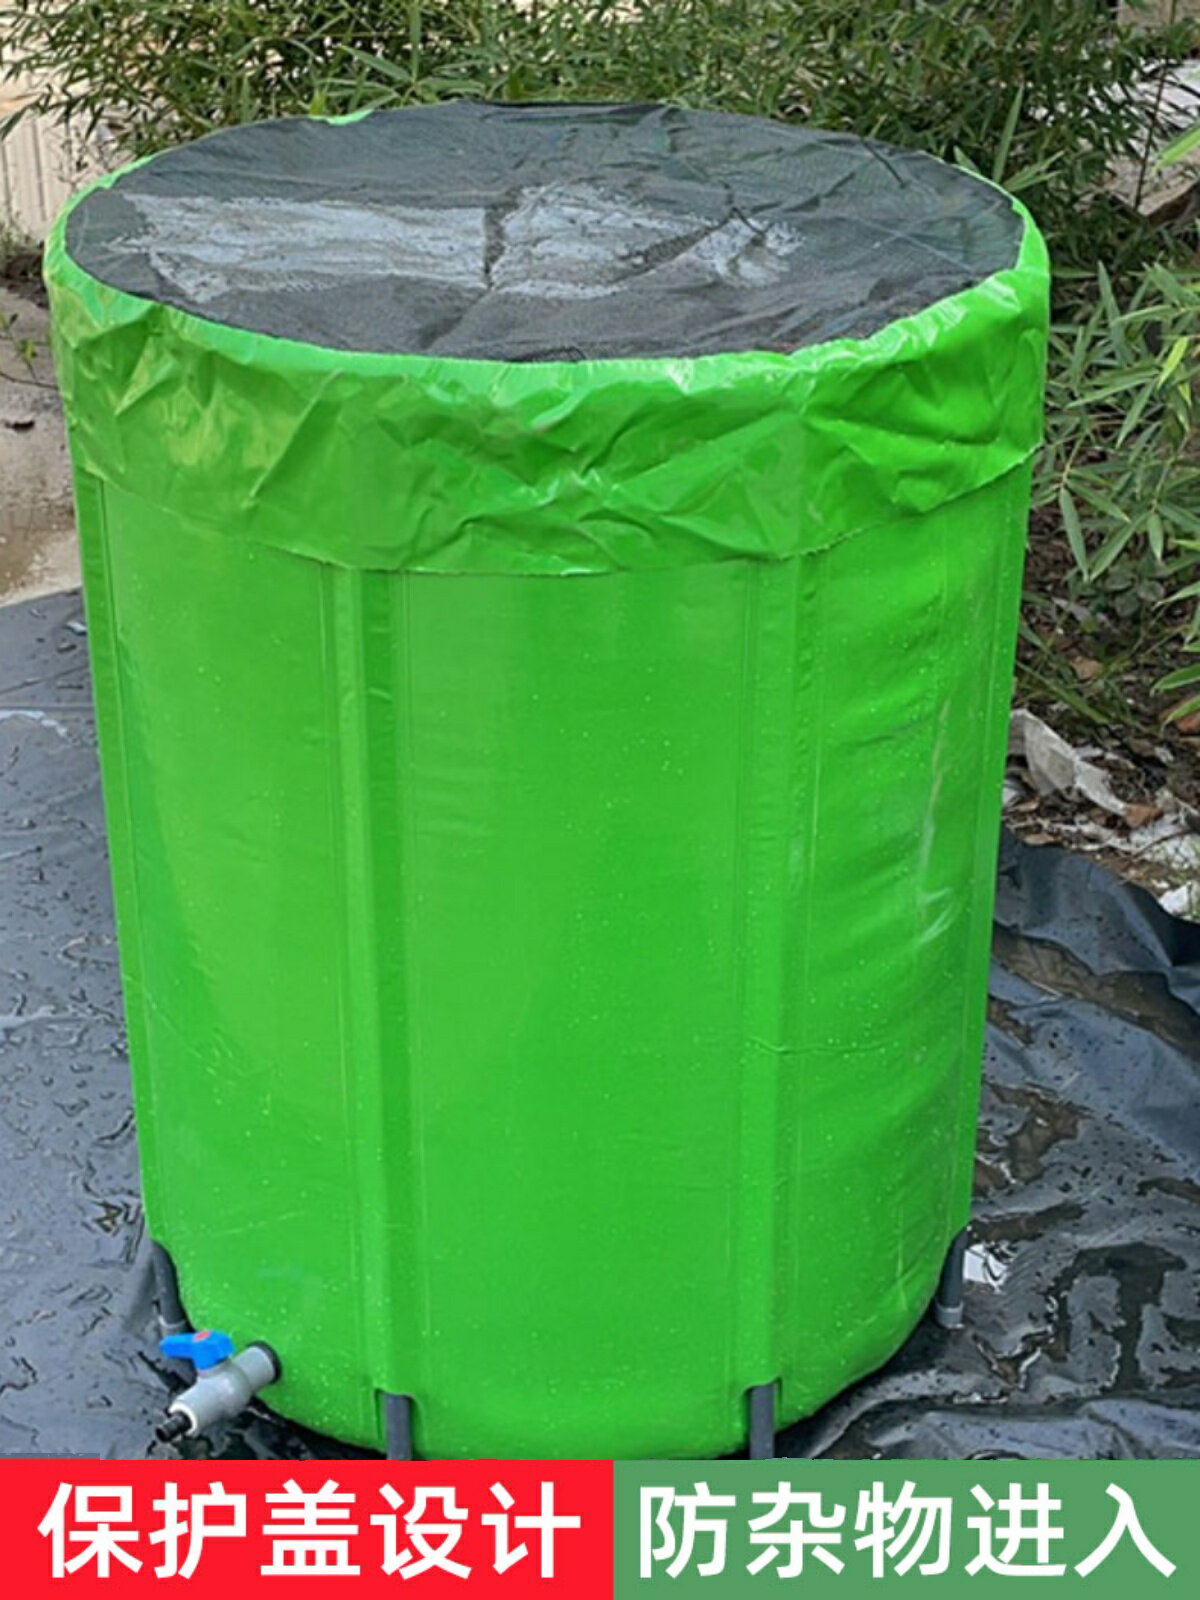 雨水收集桶器存水家用戶外大容量帶蓋多功能便攜式收納儲水折疊桶